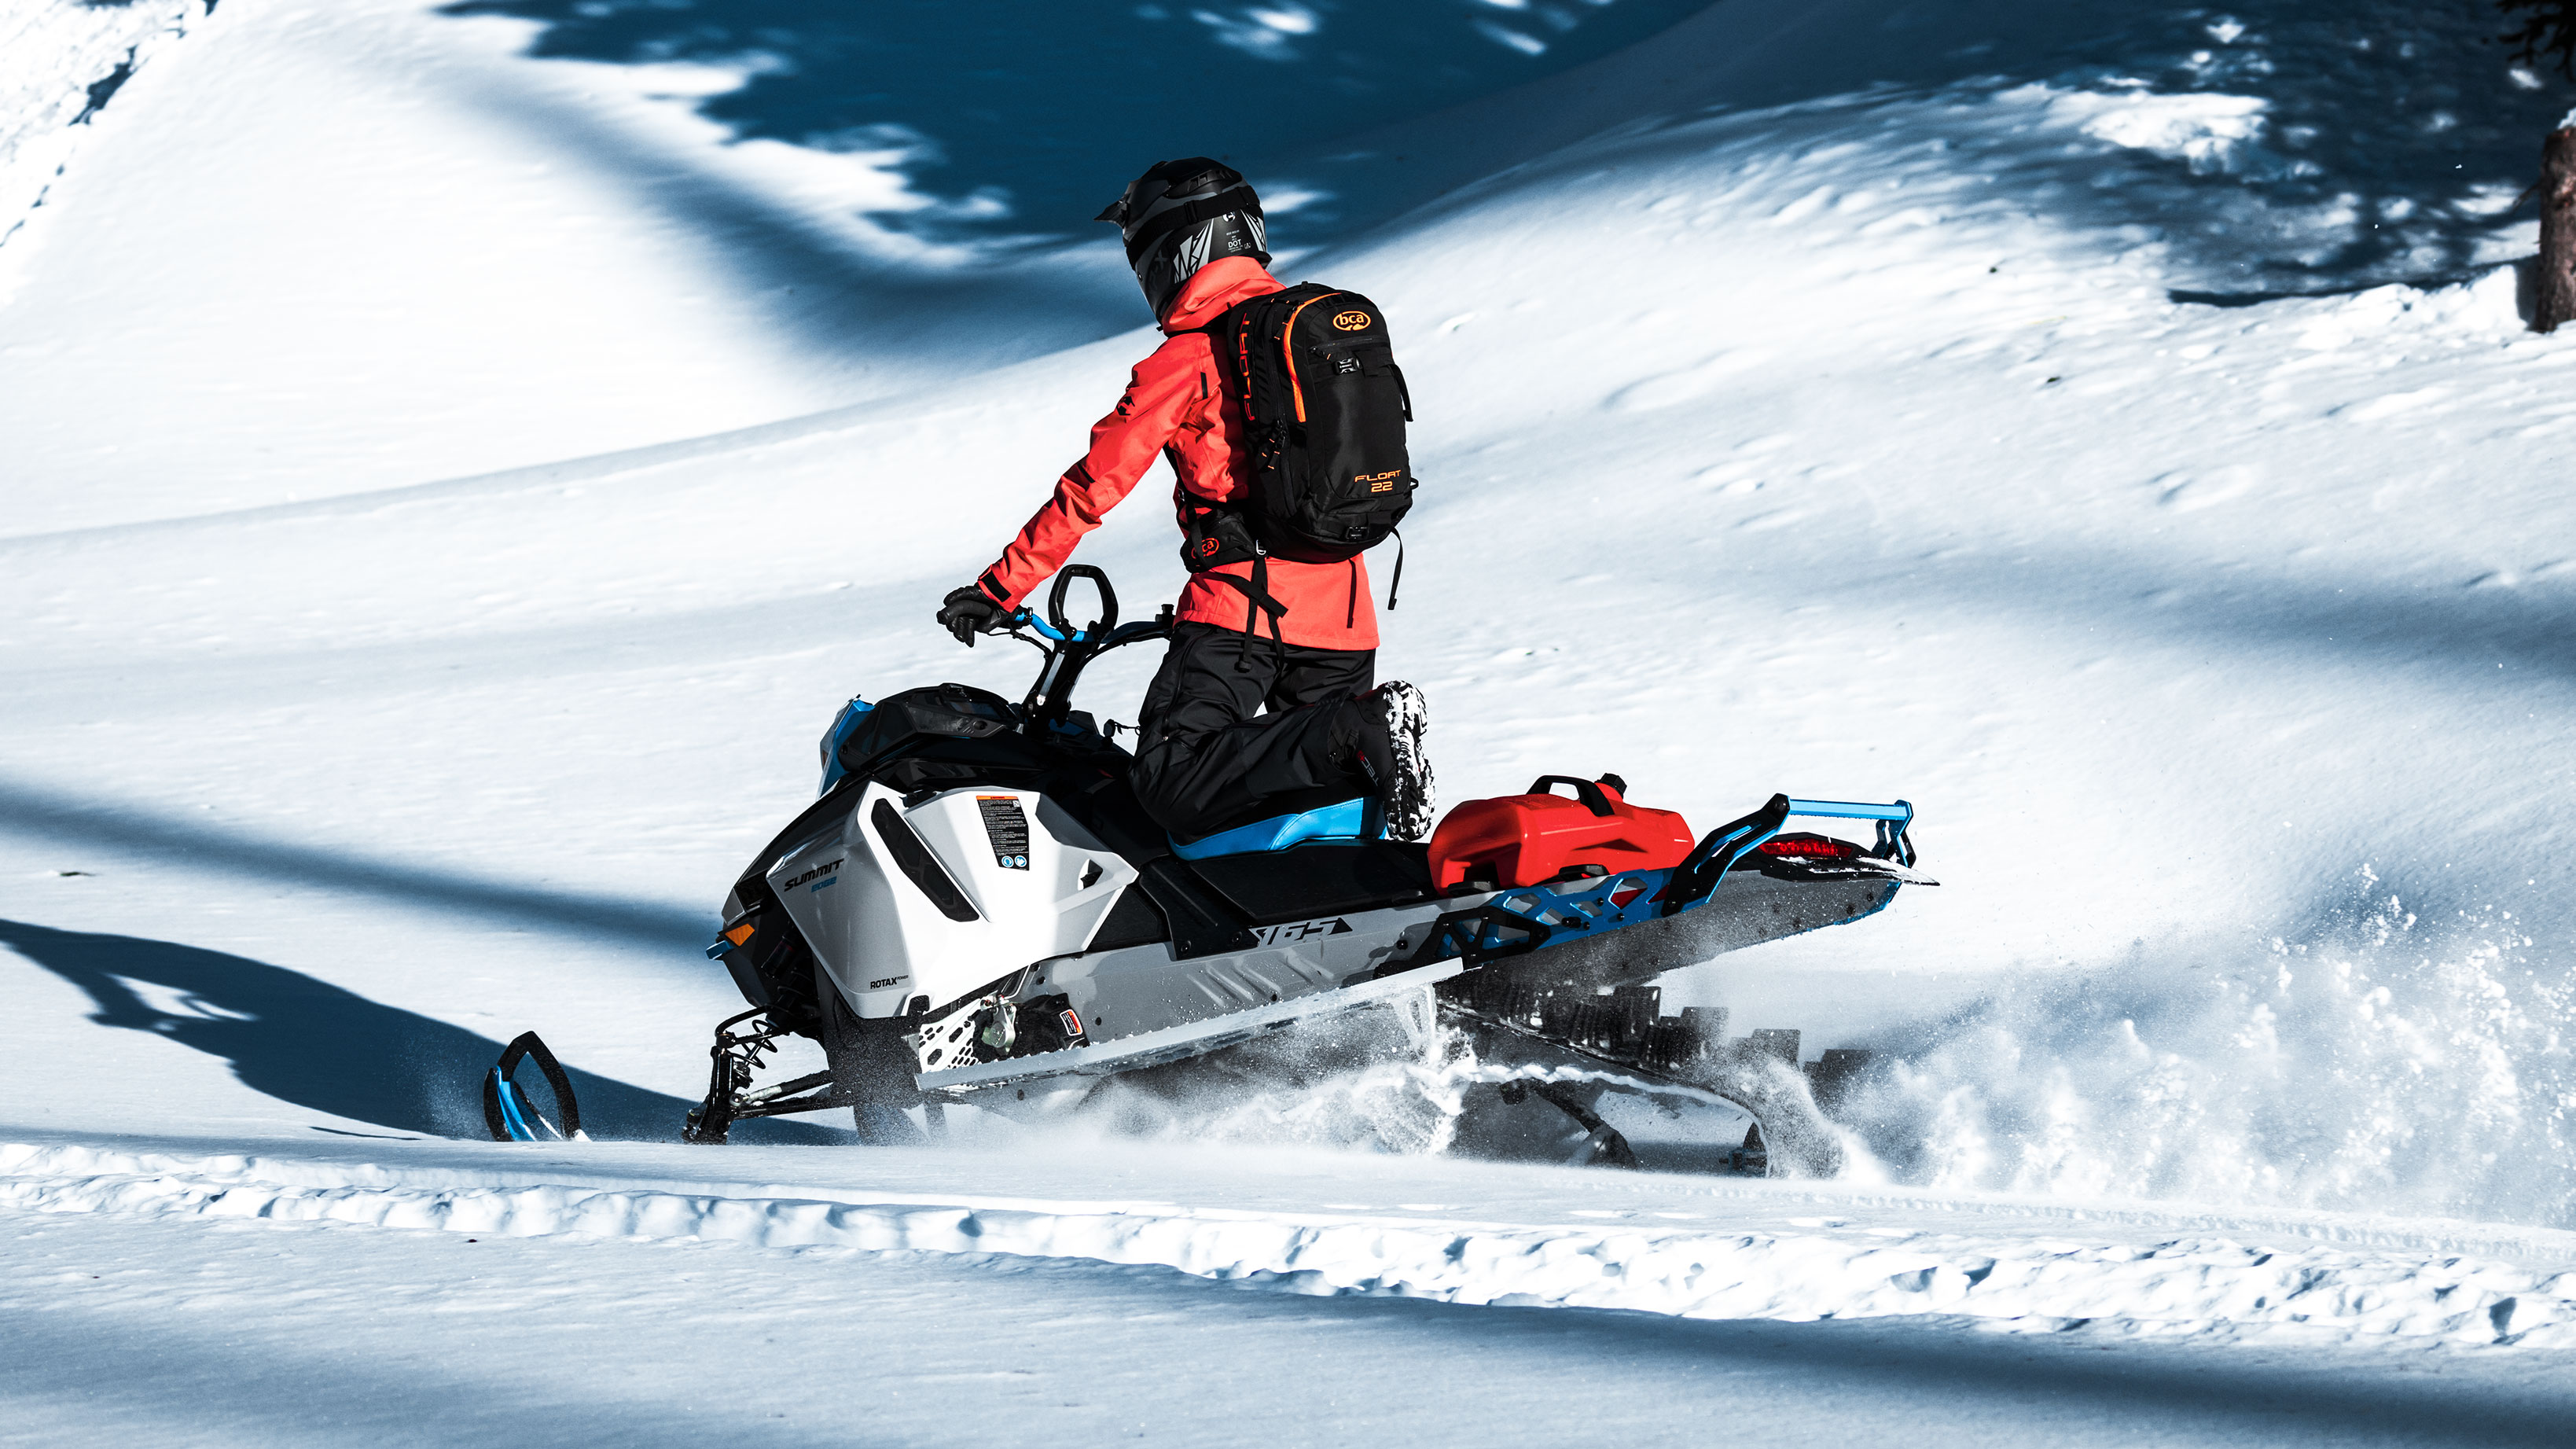  Čovjek vozi 2022 Ski-Doo Summit u planinskoj vožnji